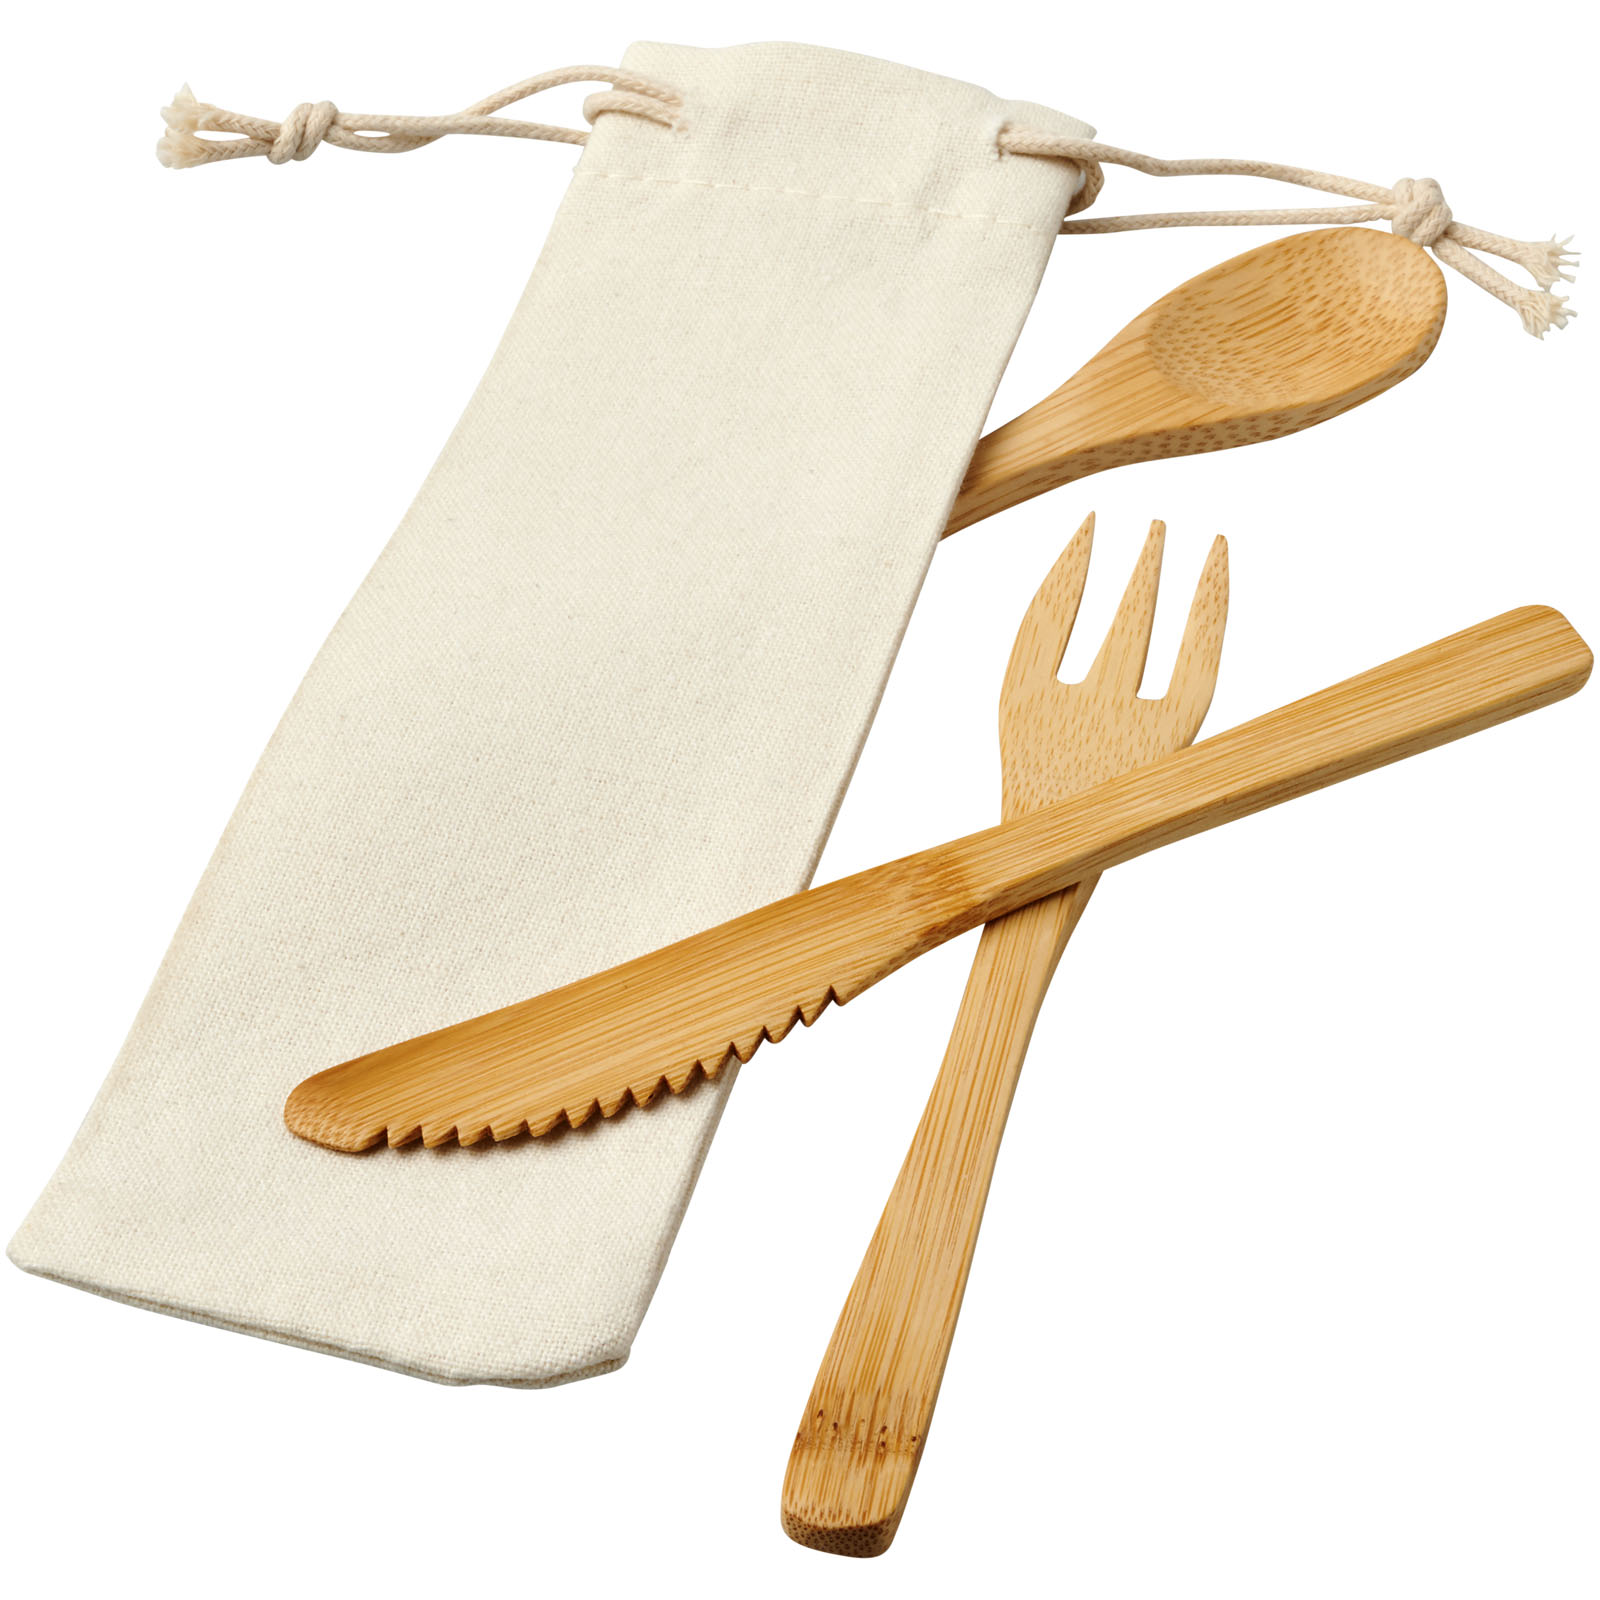 Advertising Kitchenware - Celuk bamboo cutlery set